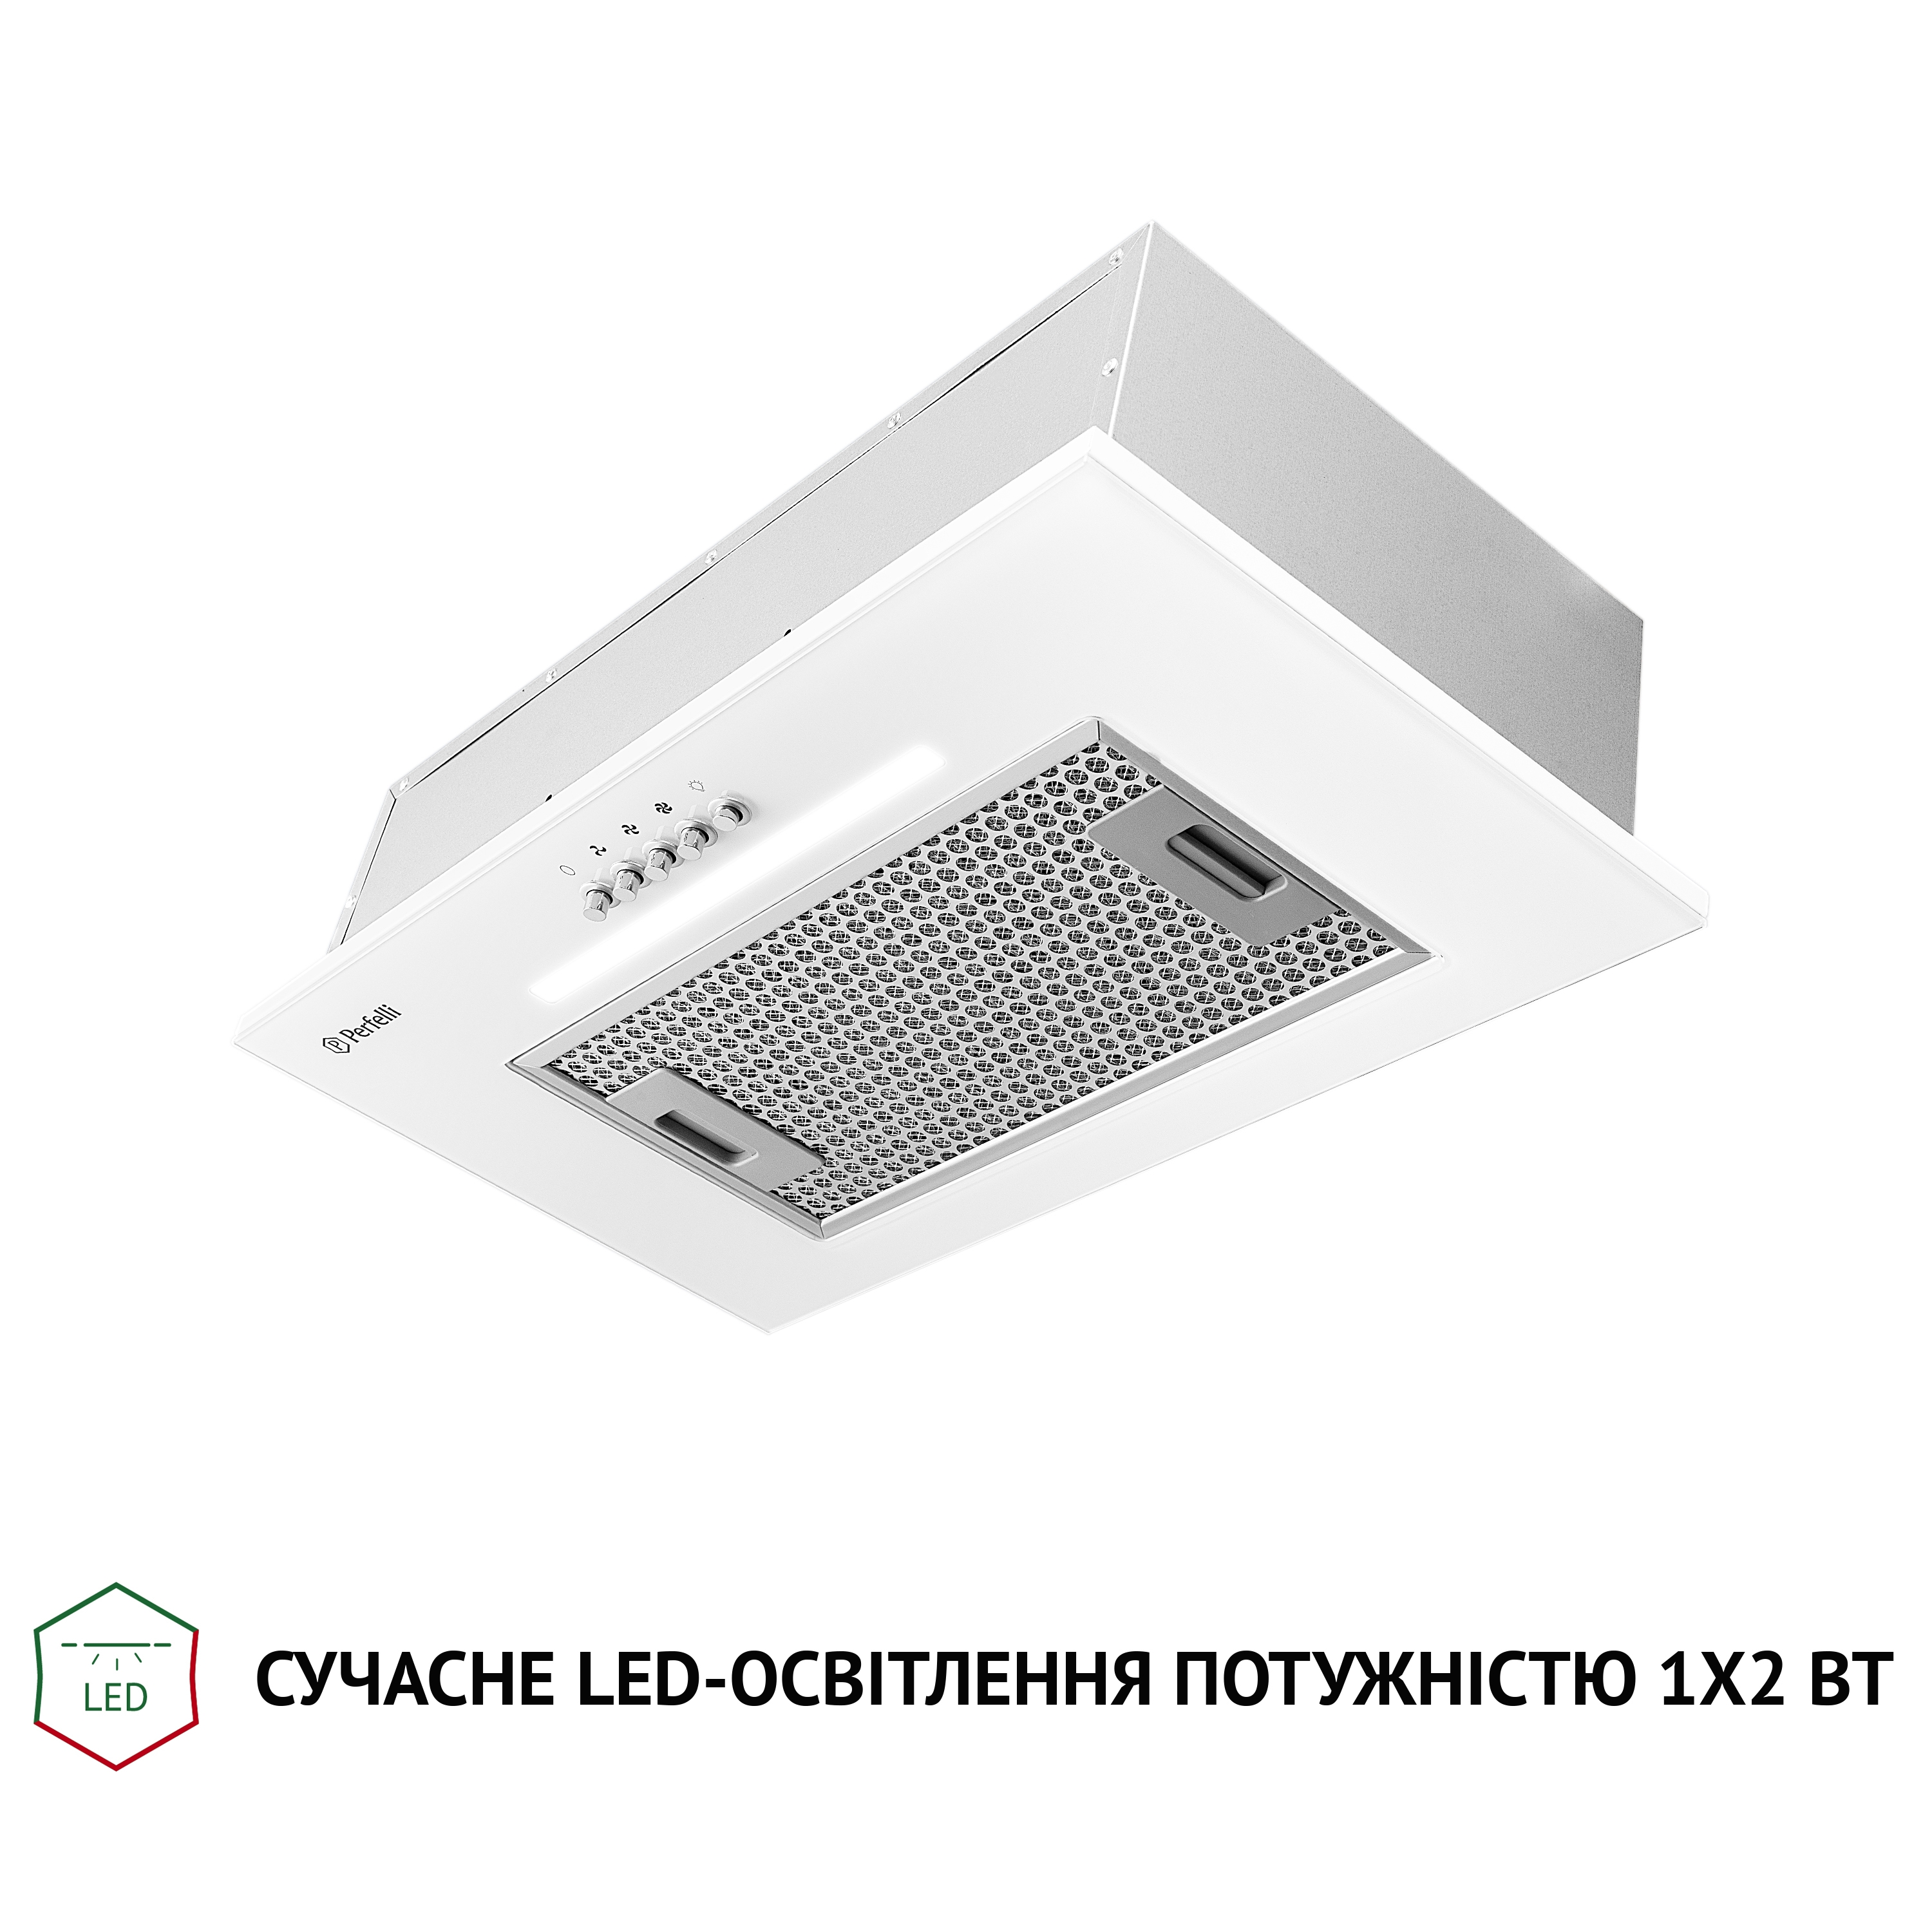 продаём Perfelli BI 5256 WH 700 LED в Украине - фото 4